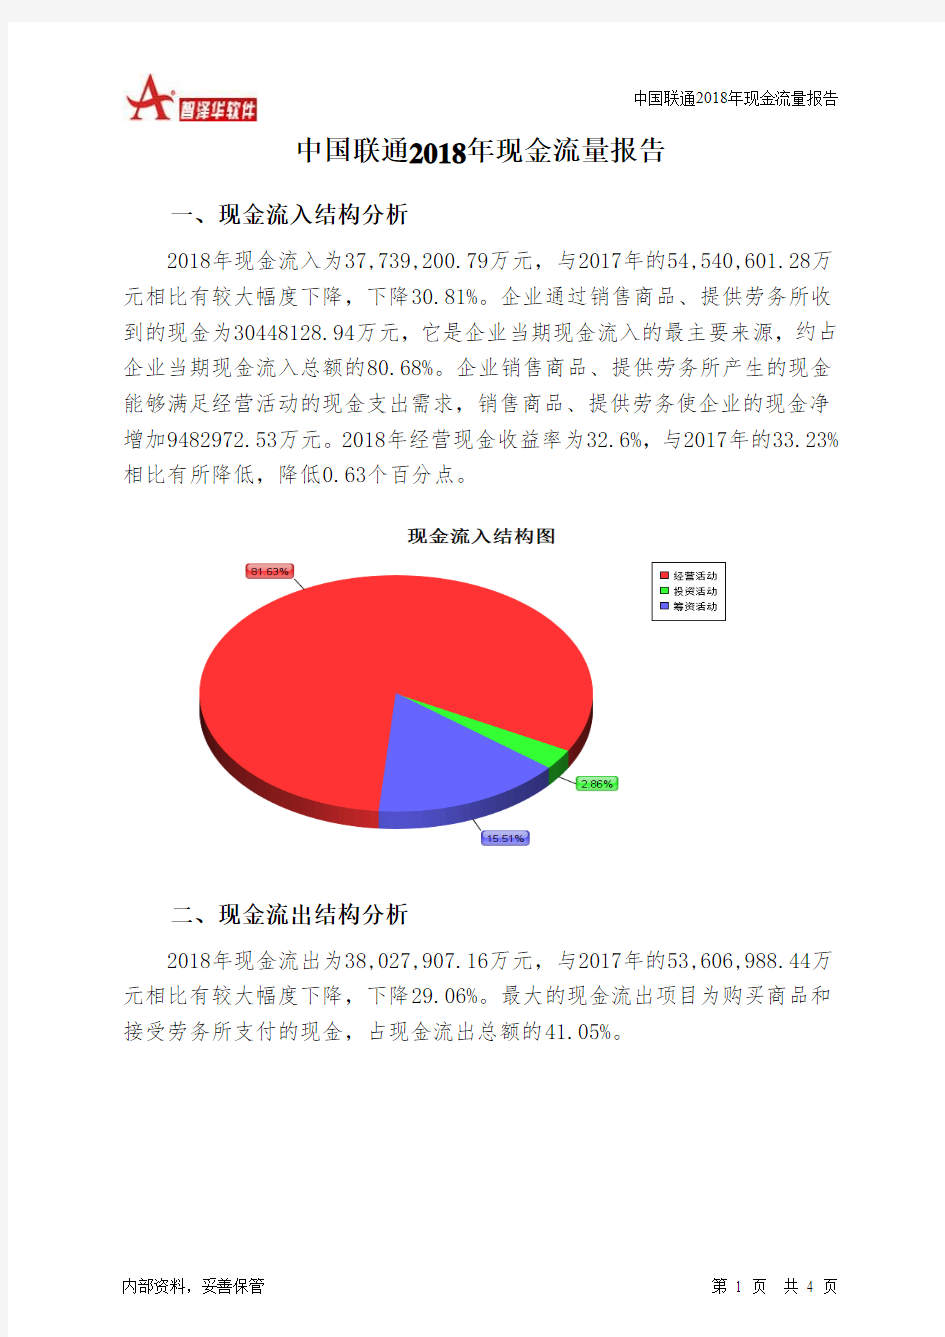 中国联通2018年现金流量报告-智泽华